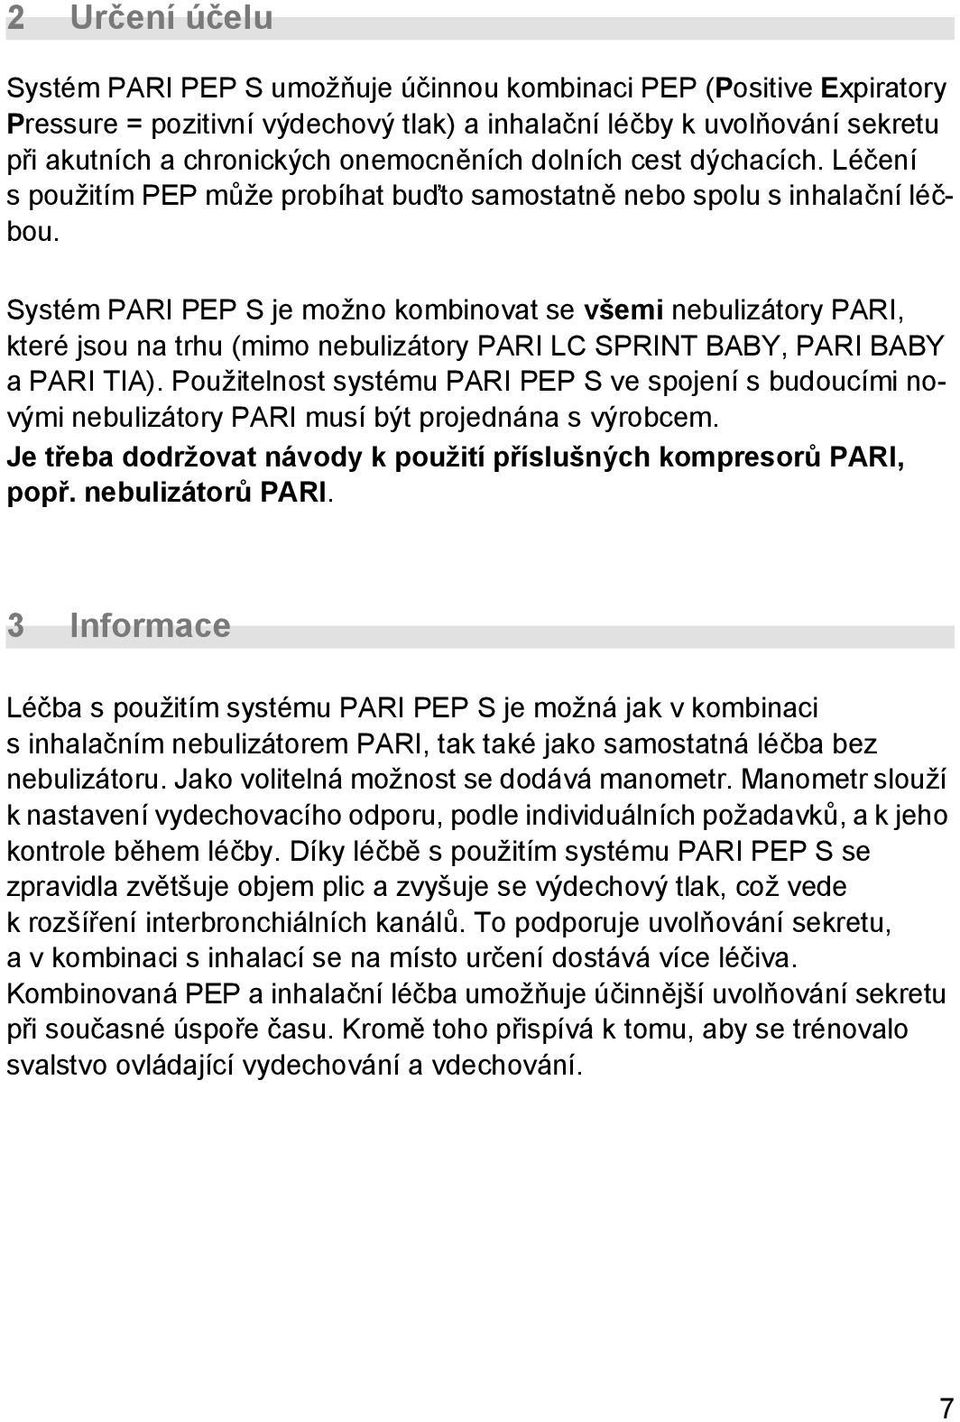 Systém PARI PEP S je možno kombinovat se všemi nebulizátory PARI, které jsou na trhu (mimo nebulizátory PARI LC SPRINT BABY, PARI BABY a PARI TIA).